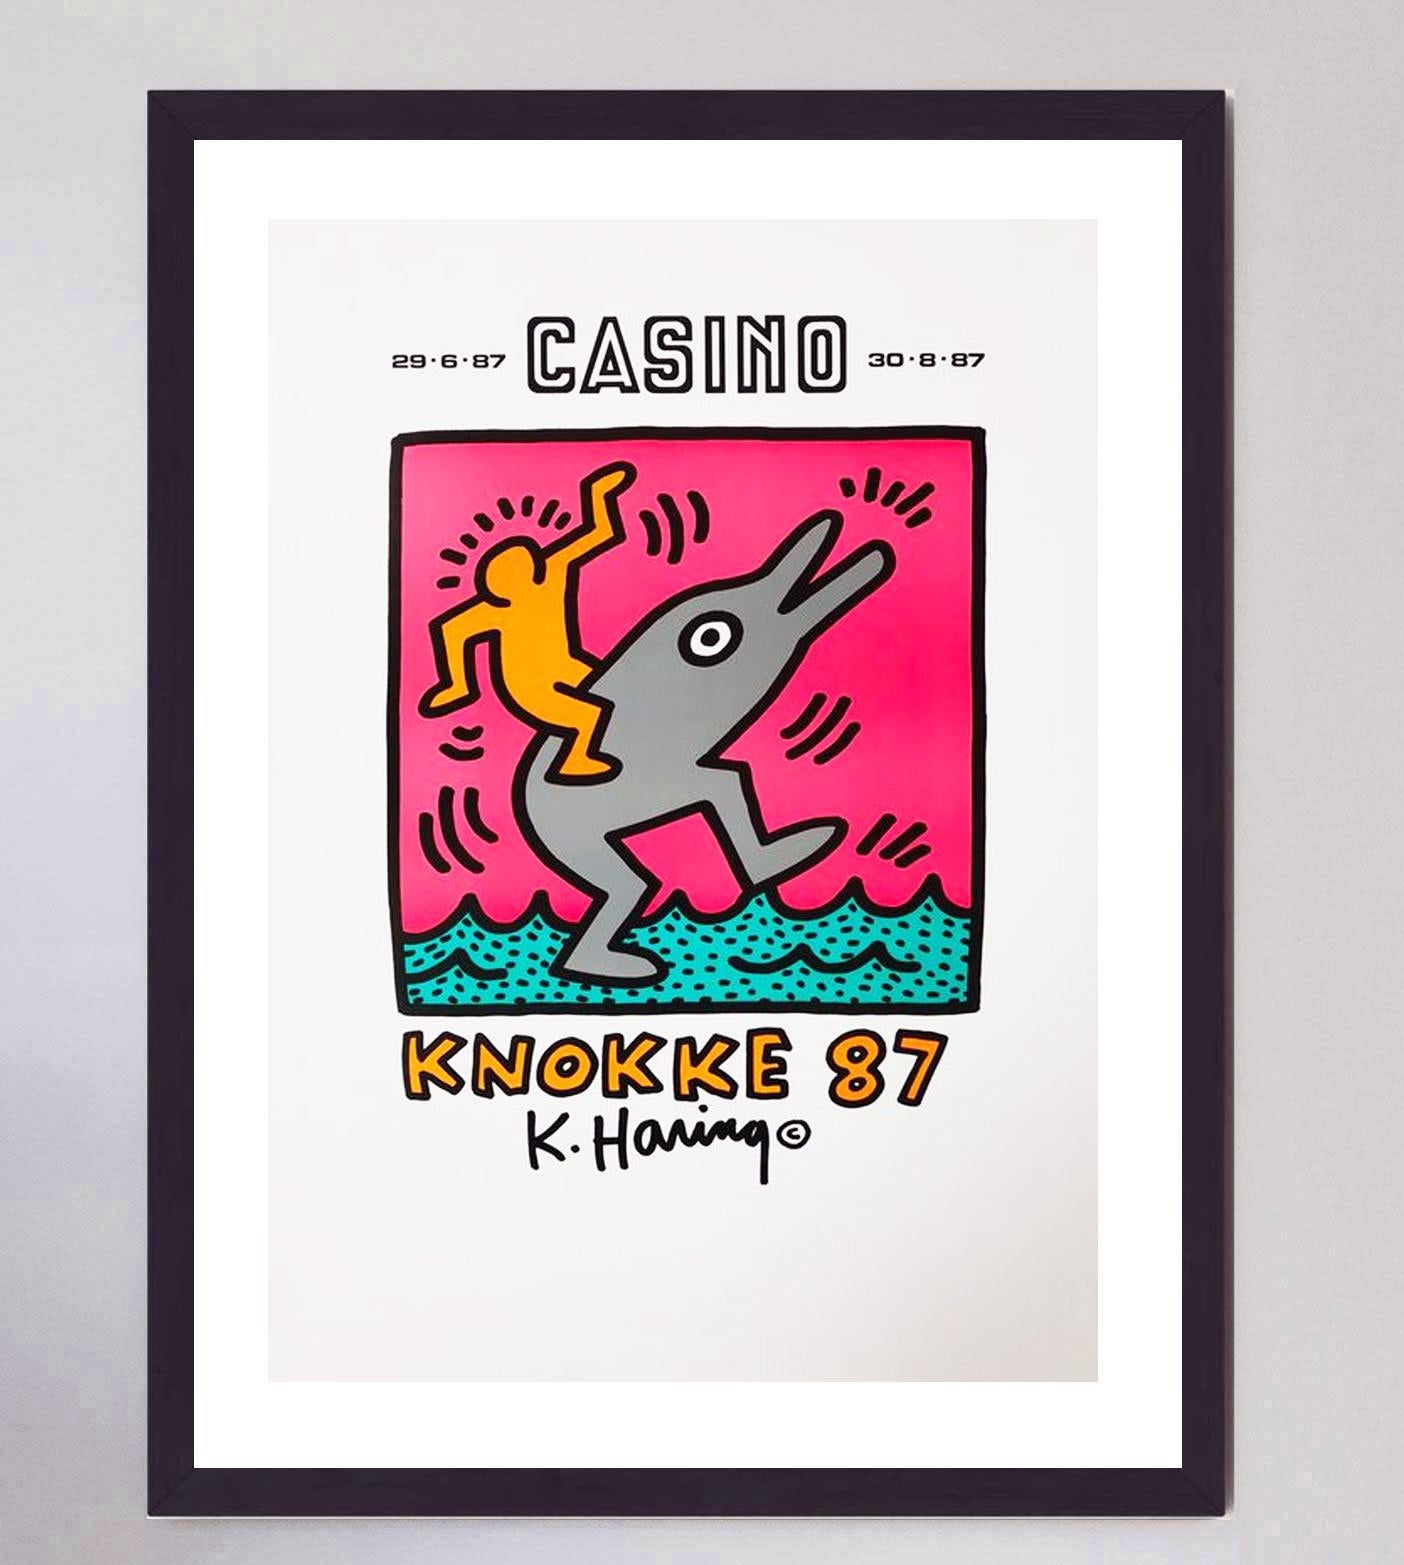 Diese wunderschöne Offsetlithografie von Keith Haring, die zur Förderung seiner Einzelausstellung im Casino Knokke in Belgien produziert wurde, ist in 5 Farben gedruckt und zeigt ein wunderschönes Originalkunstwerk. Die Ausstellung lief, wie auf dem